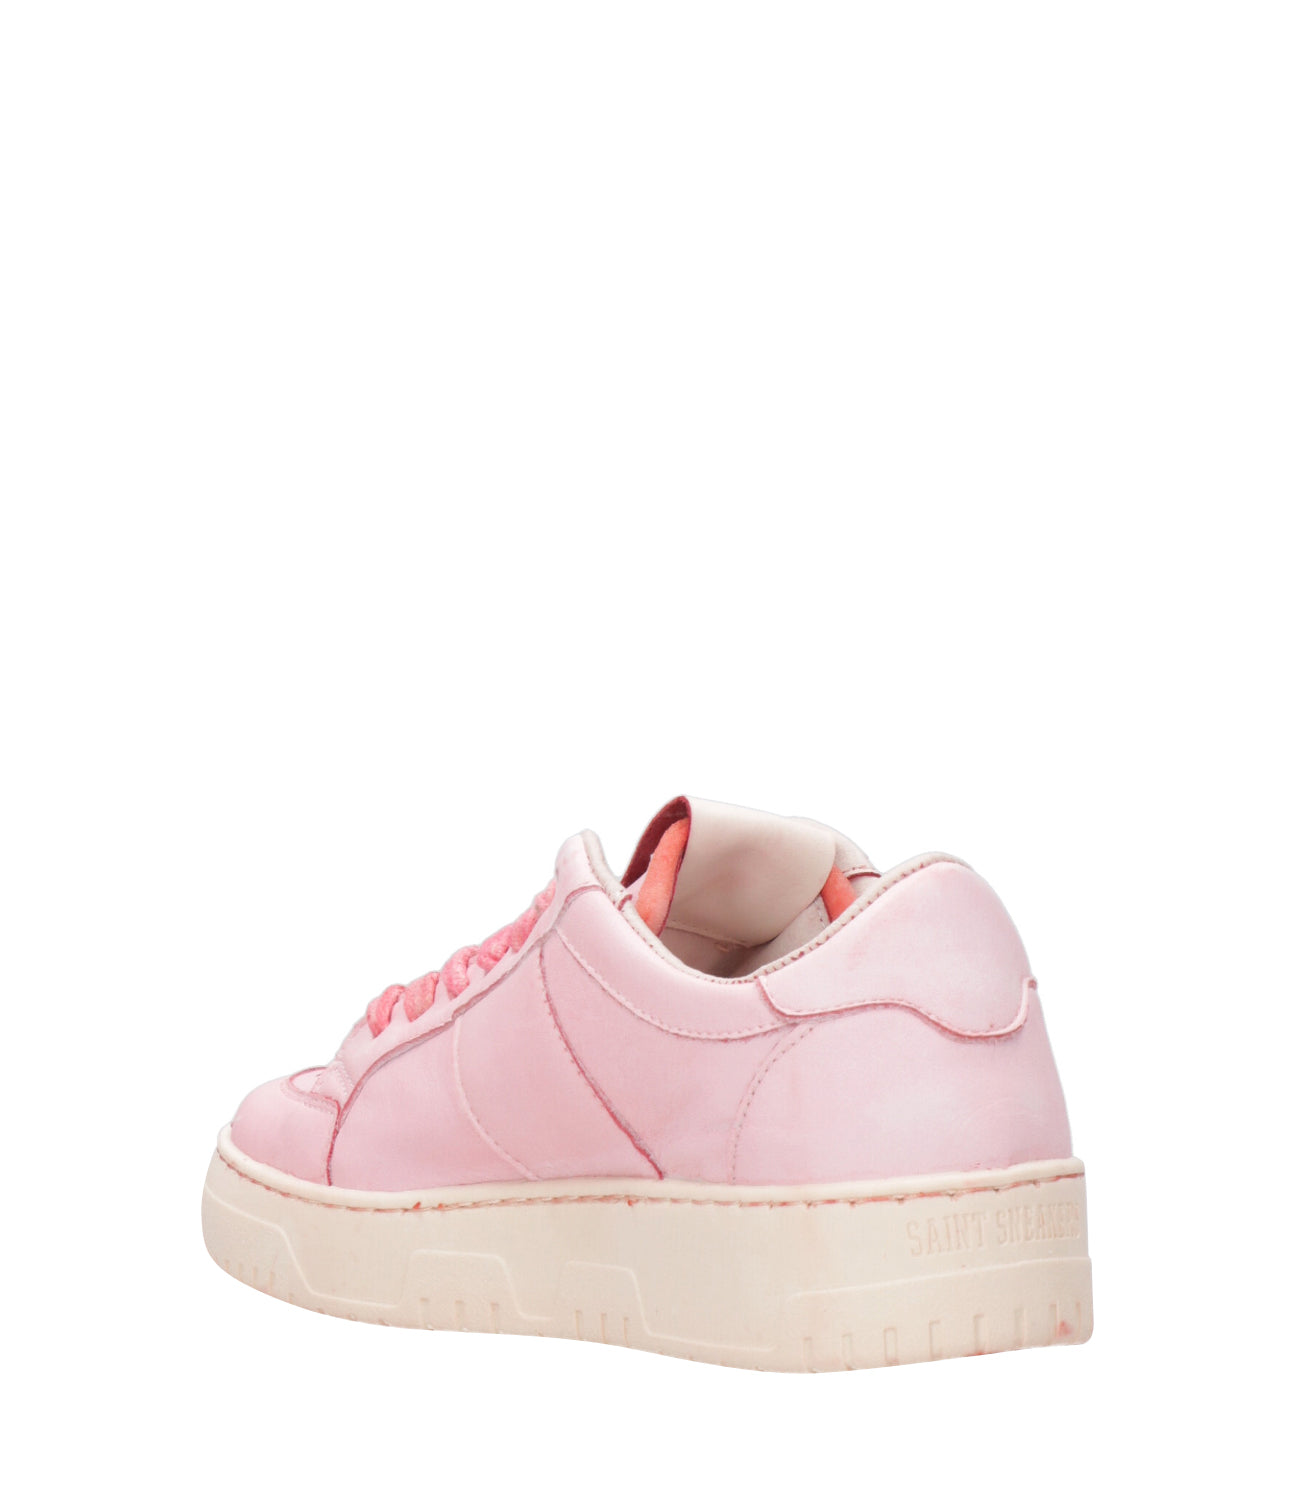 Saint Sneakers | Pink Golf Sneakers